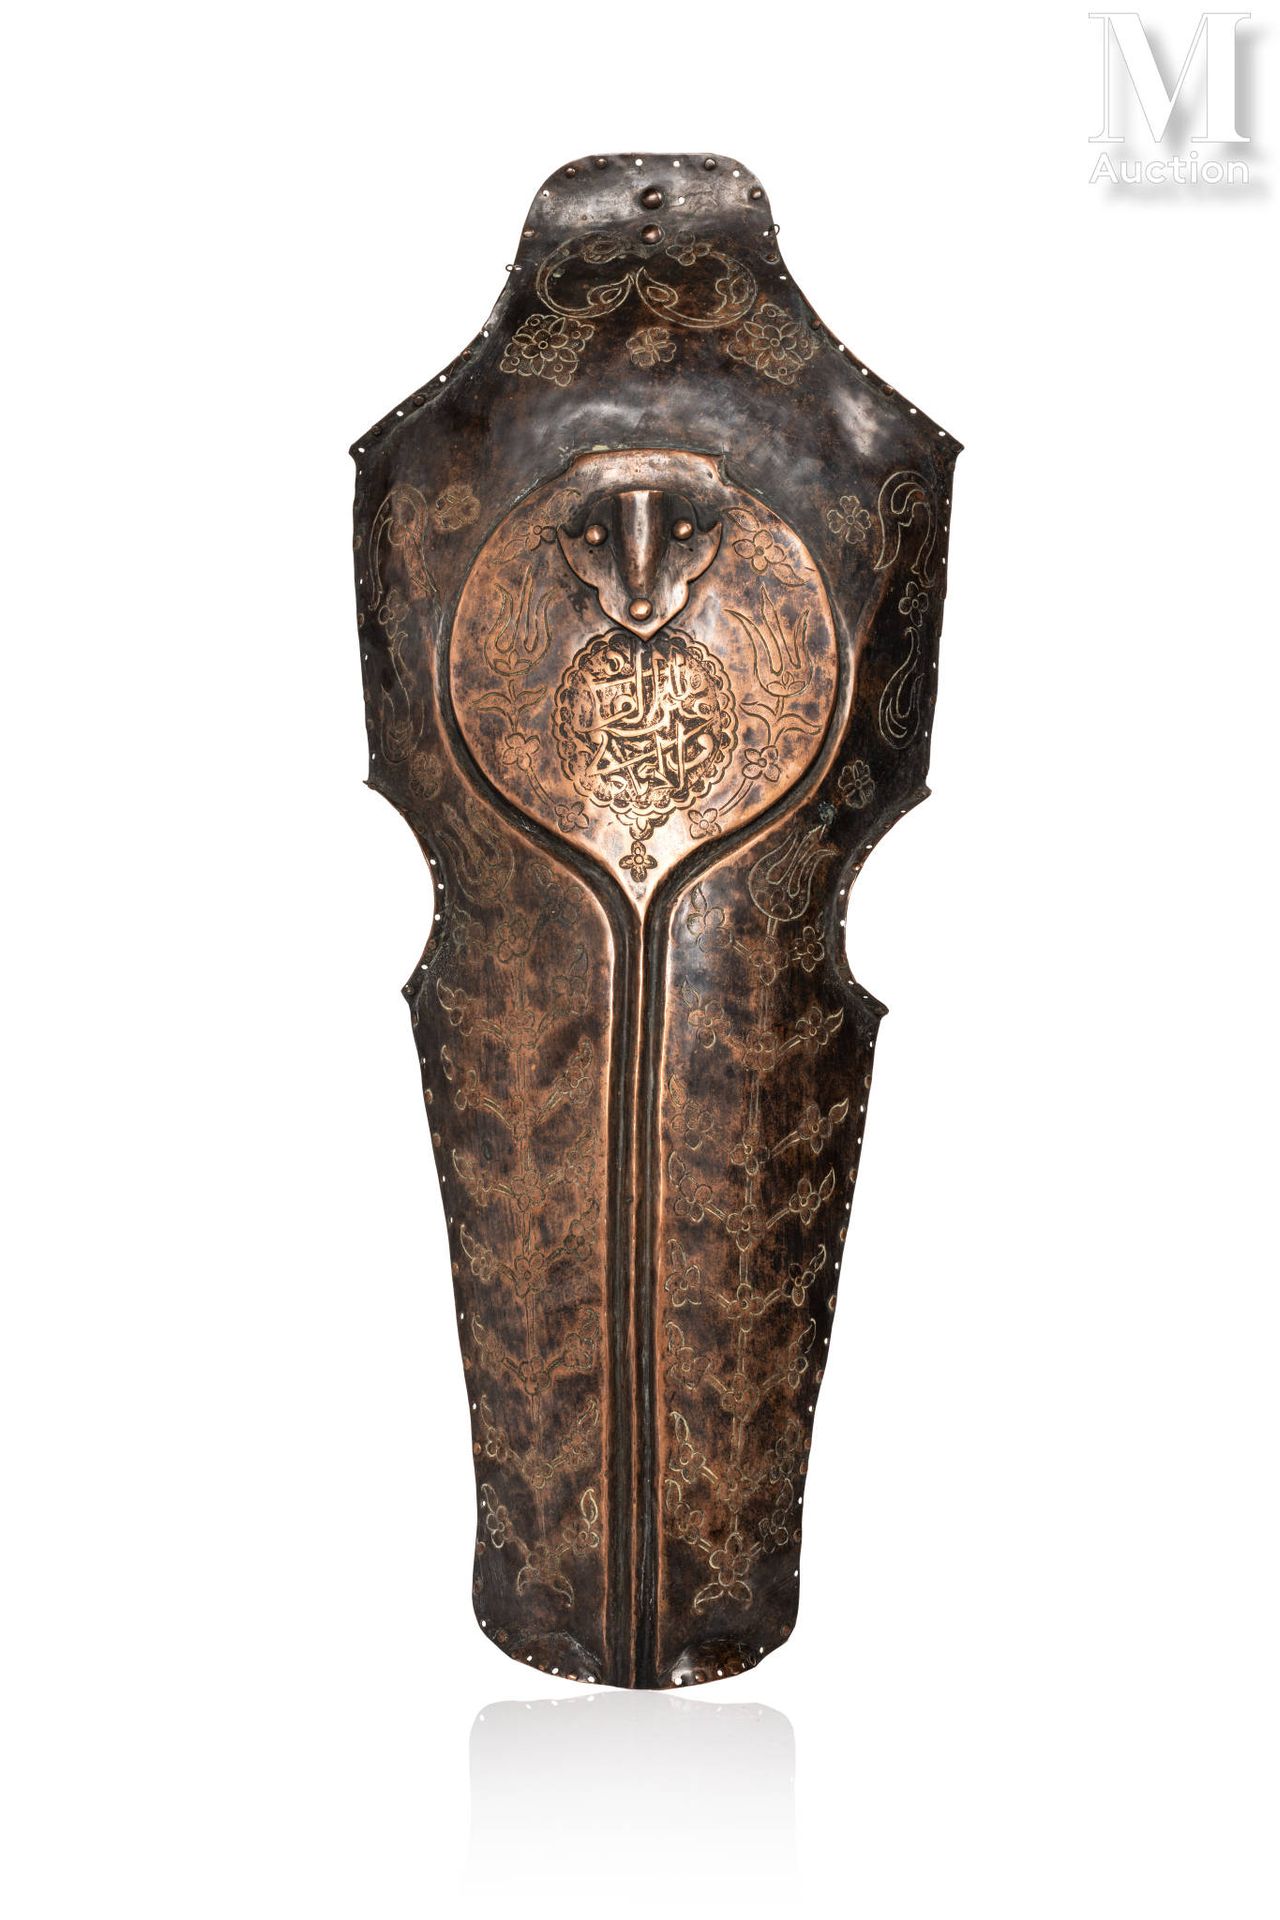 Chanfrein de cheval en cuivre Turquie, XIXe-XXe siècle
Grand masque équin en cui&hellip;